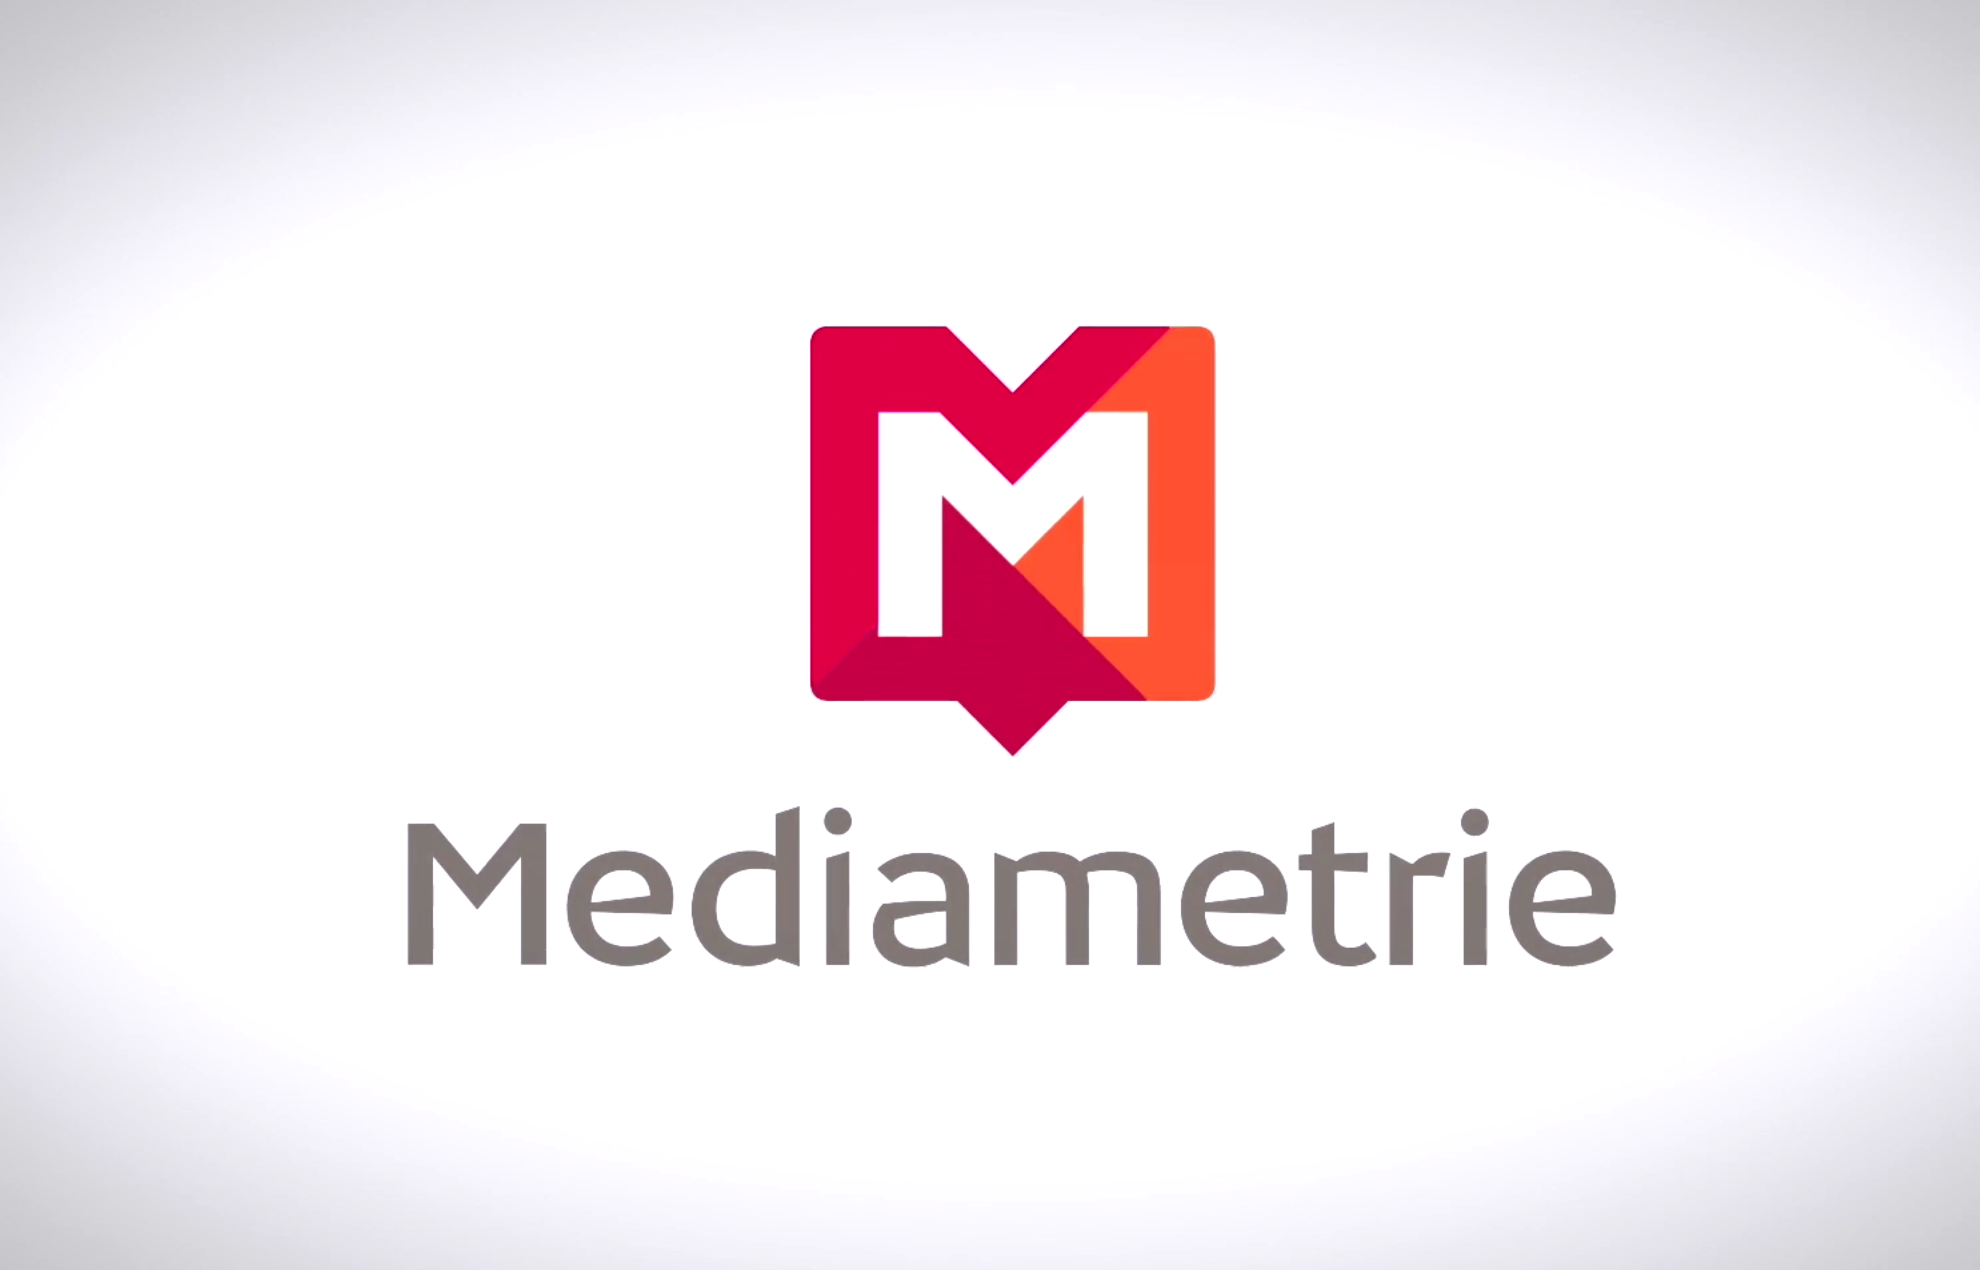 Audiences radios Médiamétrie – RTL reste la première radio de France mais Europe 1 est plus bas que prévu